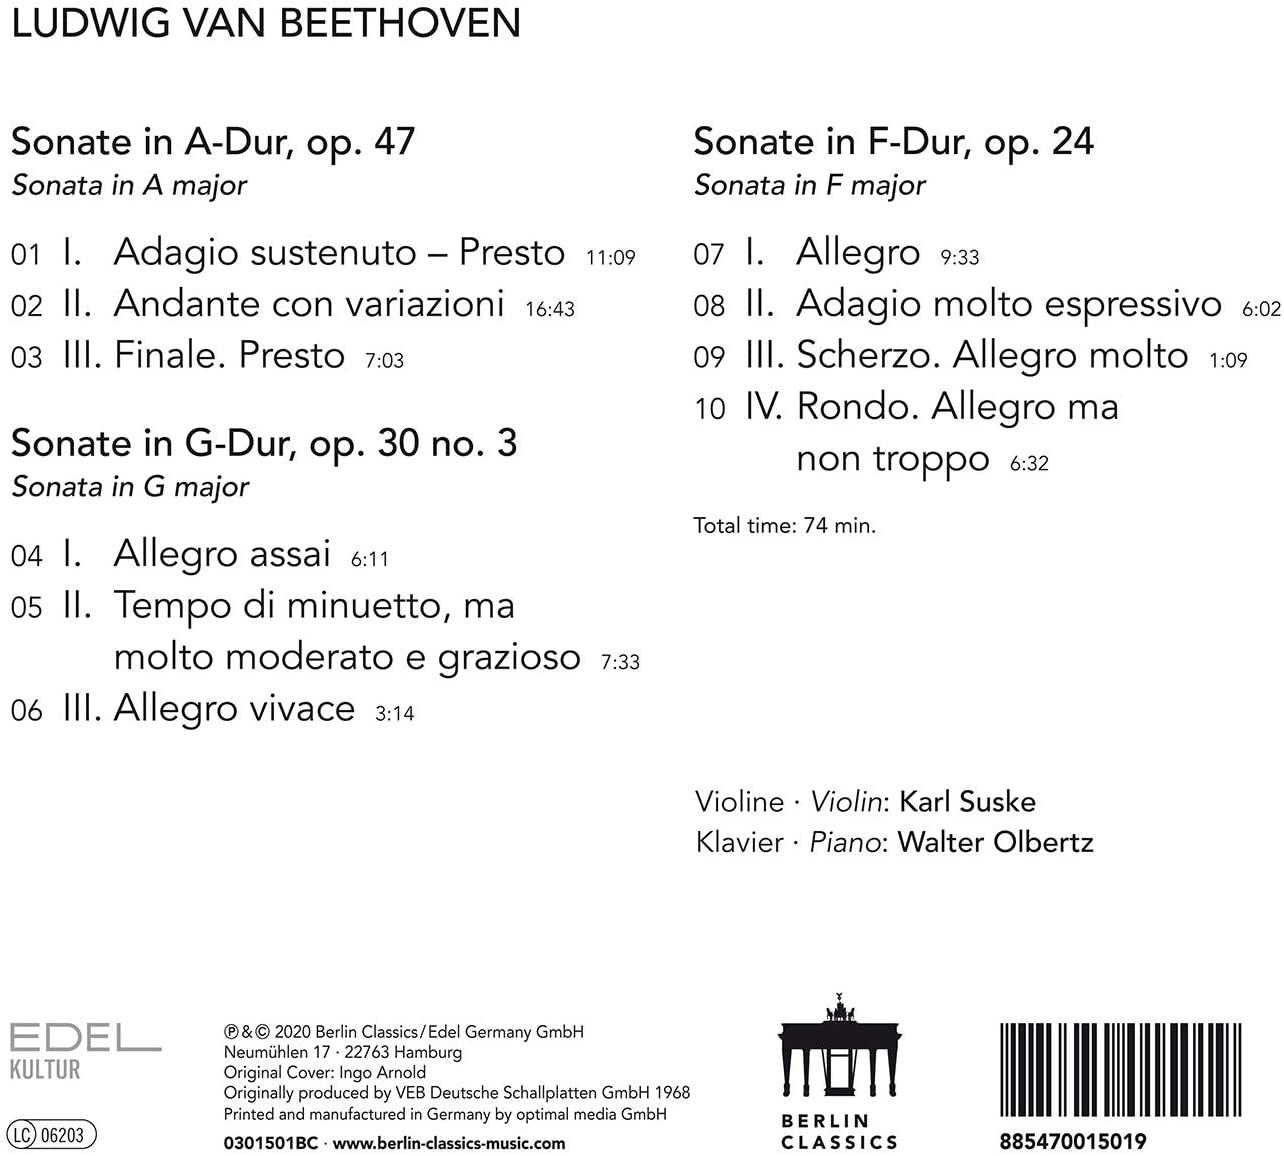 Karl Suske 베토벤: 바이올린 소나타 9, 8, 5번 (Beethoven: Violin Sonatas Op. 47, 30, 24)